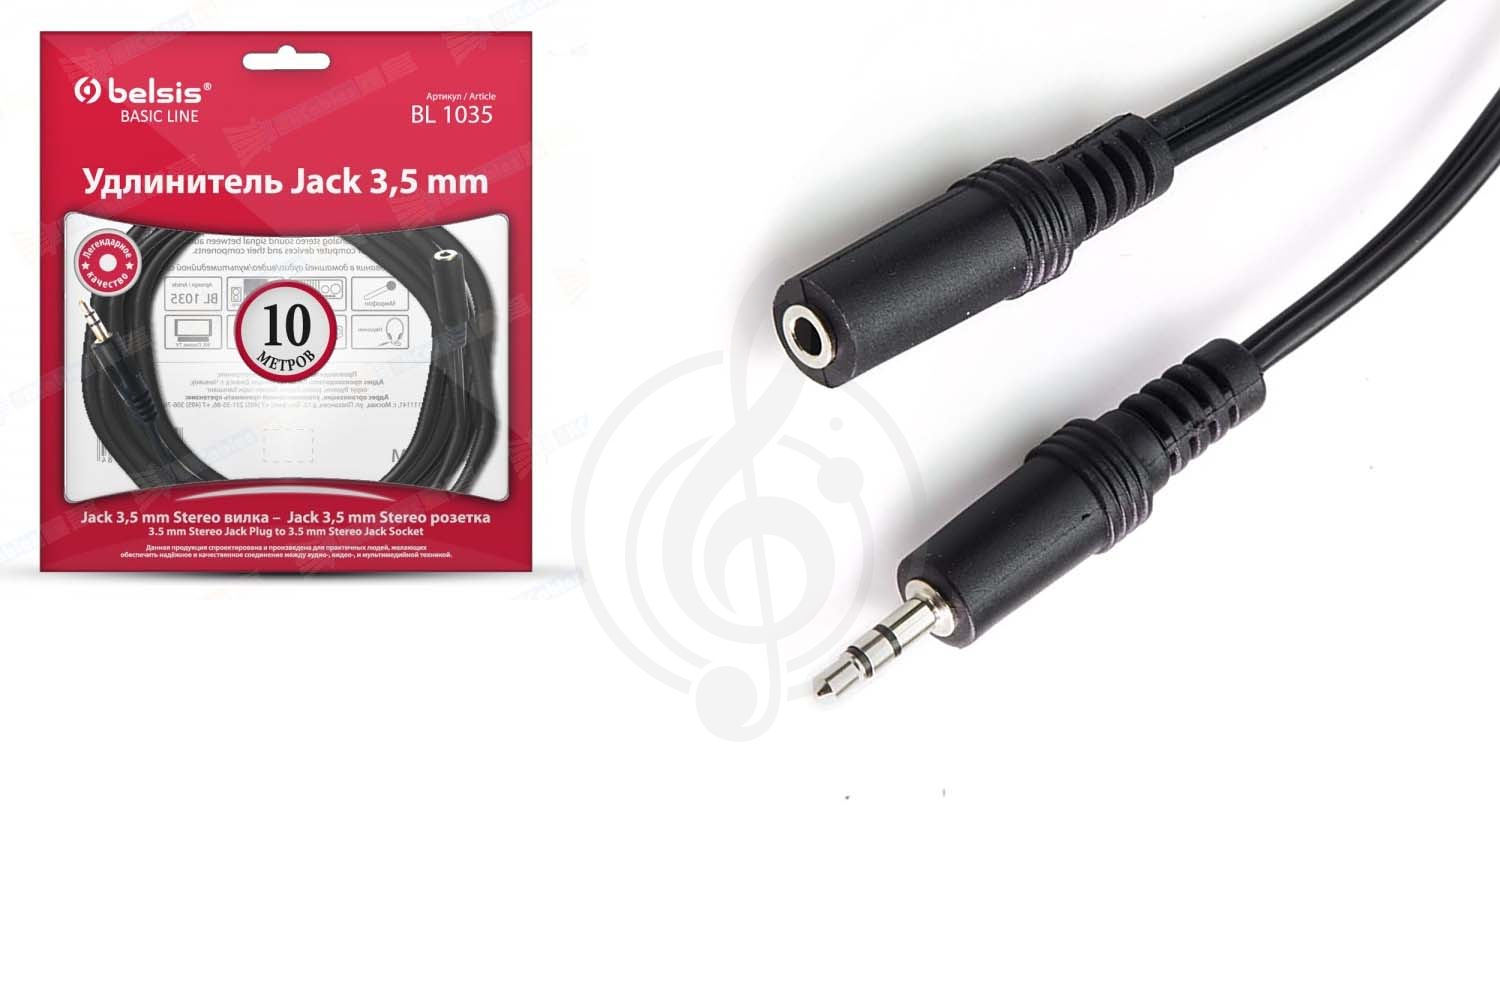 Наушники для клавишных Y-межблочный кабель Belsis Belsis BL1035 Кабель Jack 3.5 mm вилка &lt;--&gt; Jack 3.5 розетка, удлинитель, стерео-аудио, 10 м. BL1035 - фото 1